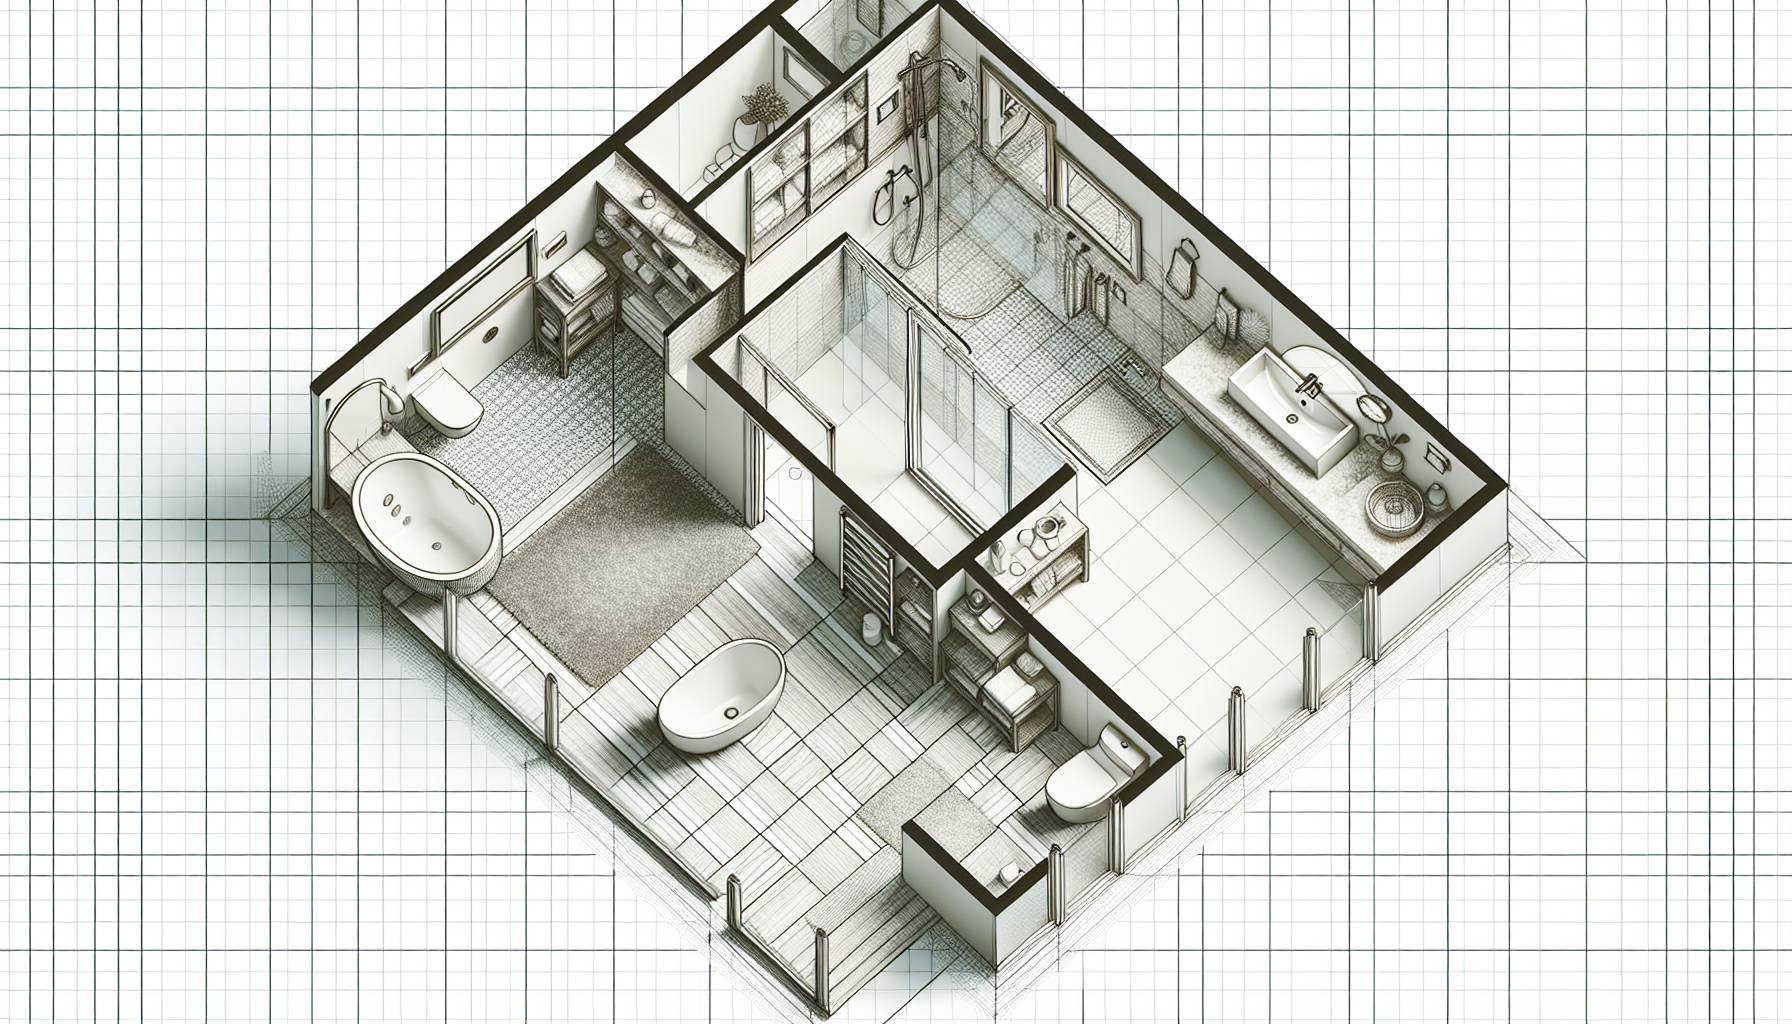 Grundrissplan eines Badezimmers mit geplanten Elementen wie Dusche, Badewanne, Toilette und Waschbecken